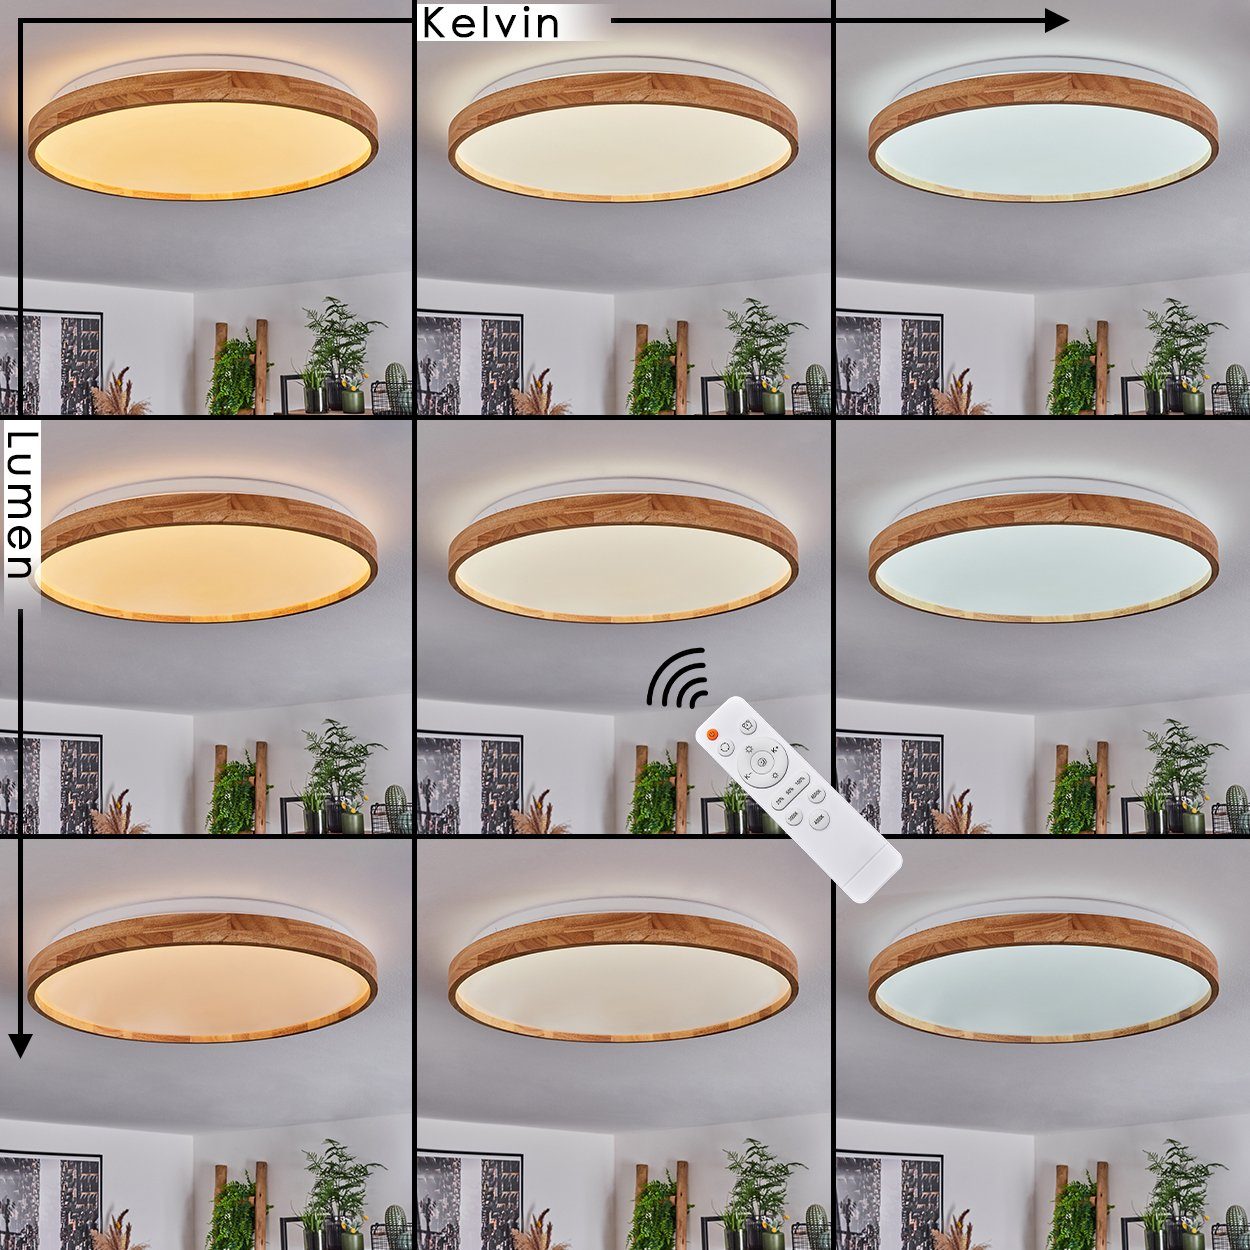 Deckenlampe Kelvin aus 6500 dimmbare Deckenleuchte »Crivola« Metall/Holz, hofstein